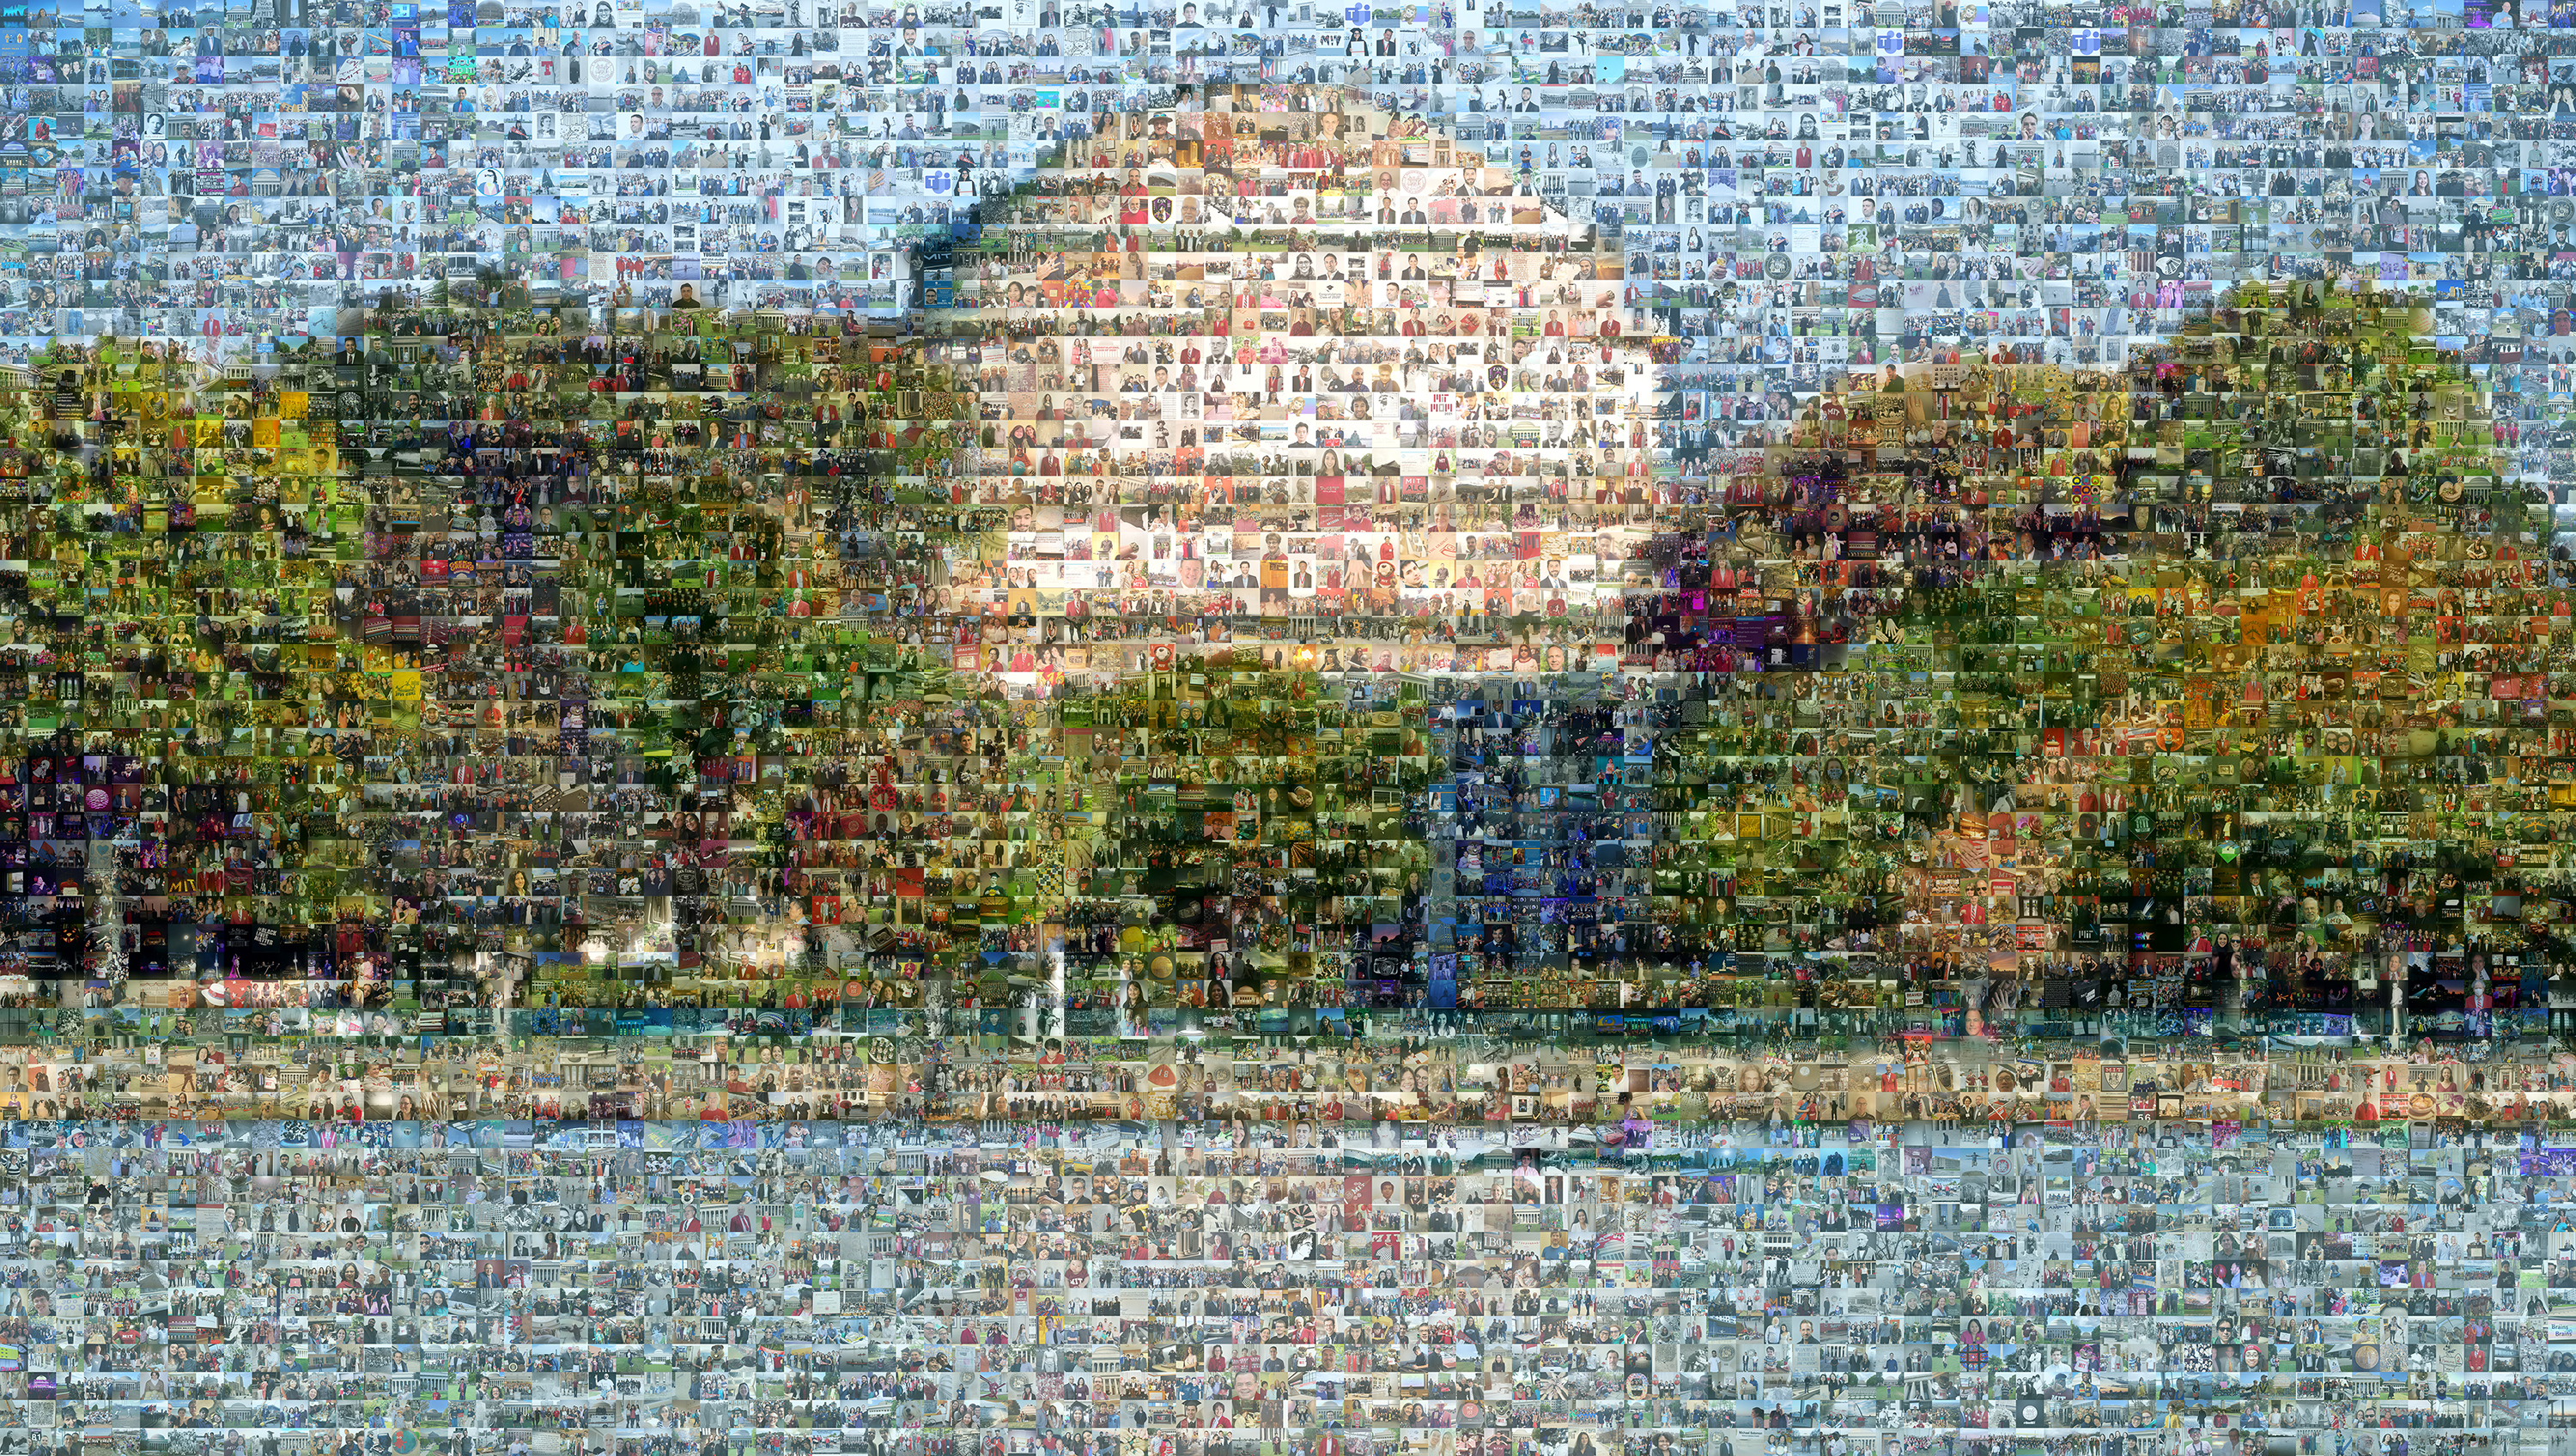 MIT mosaic